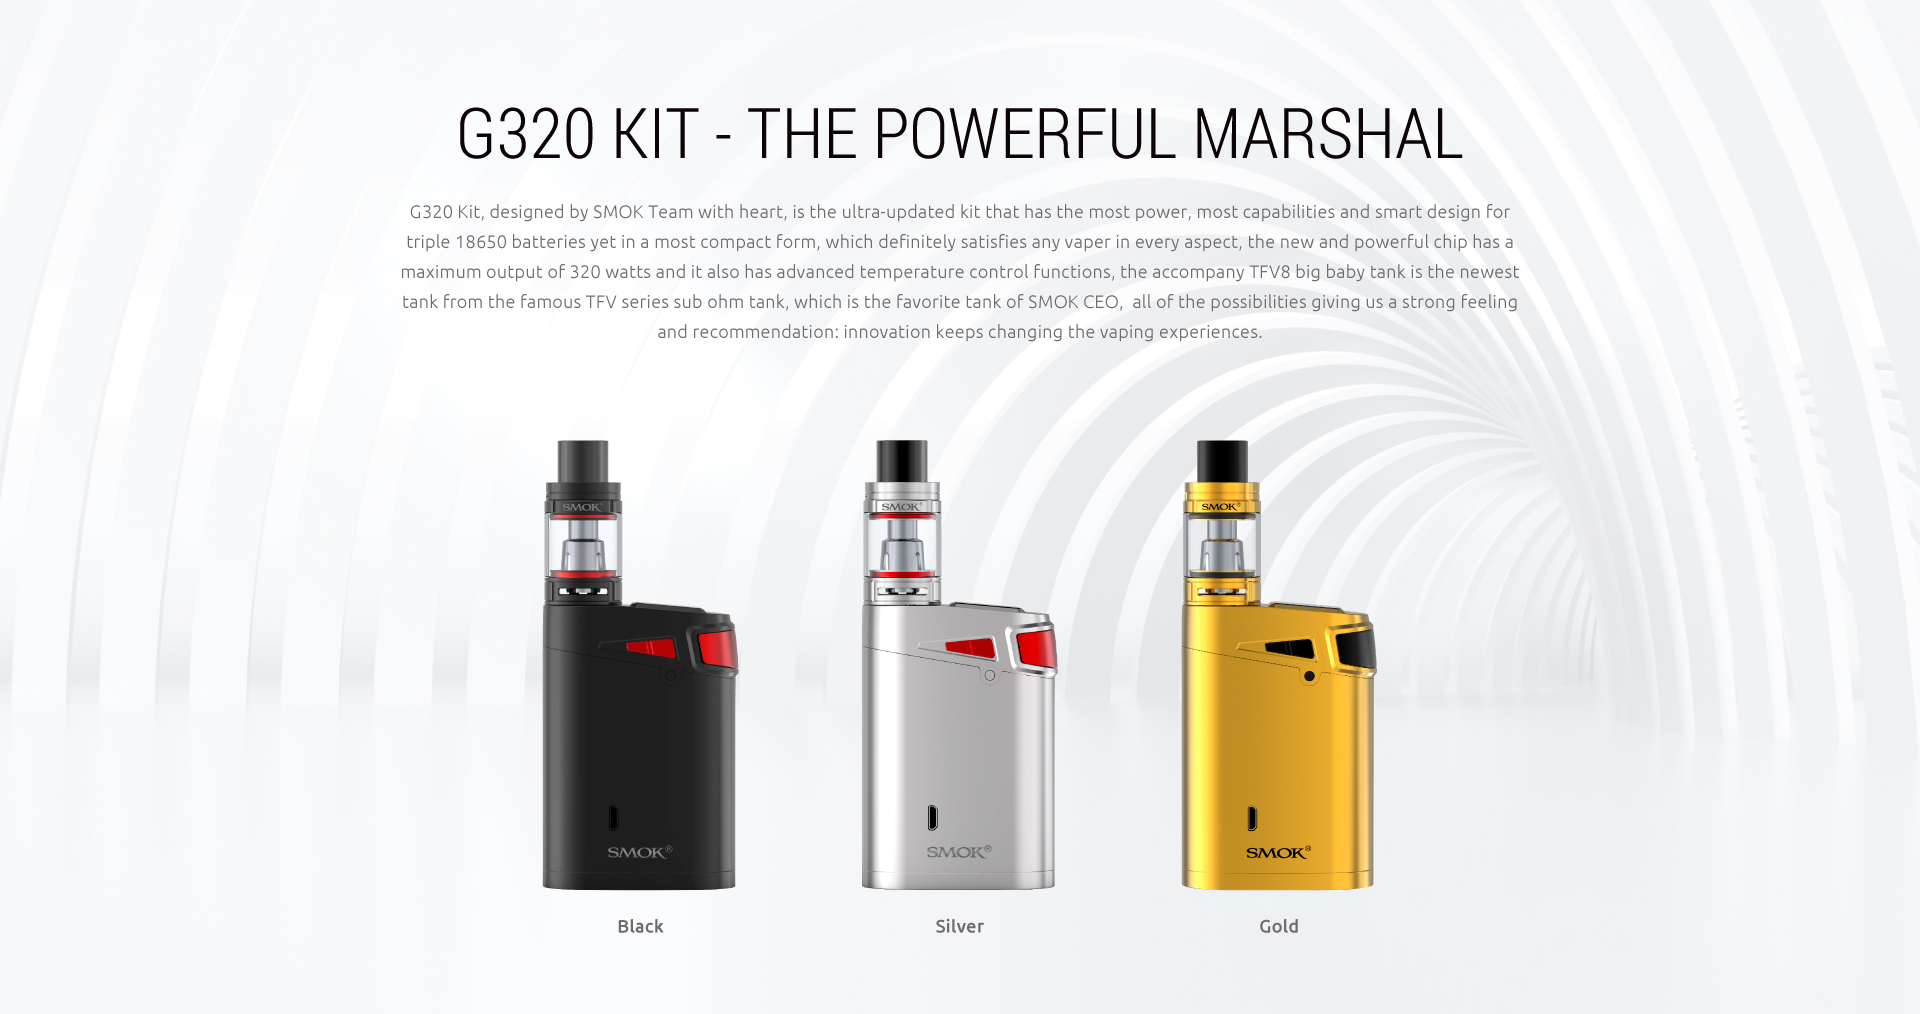 The Powerful Marshal - SMOK G320 Kit 